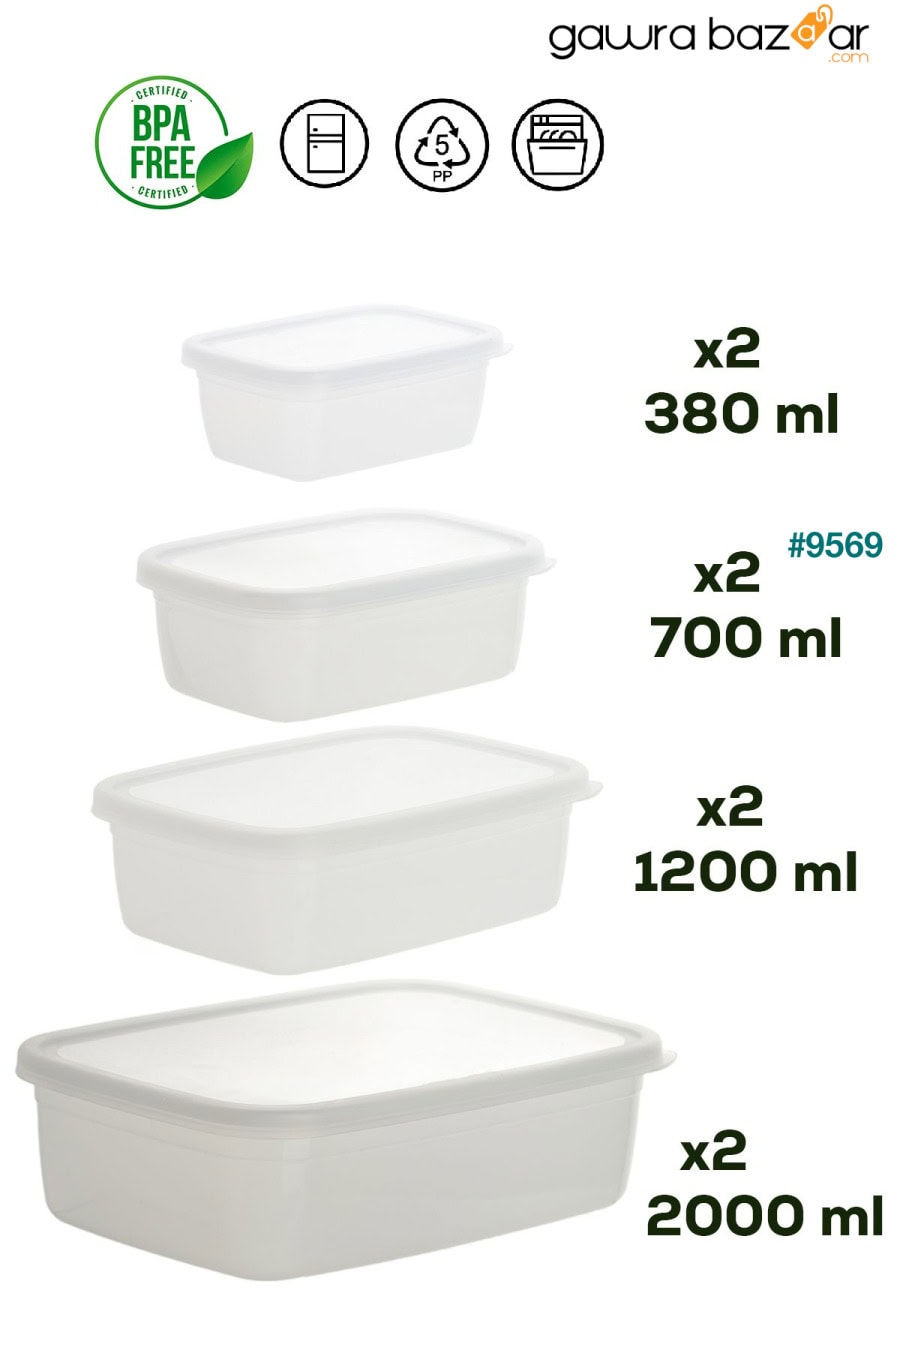 1046 مجموعة حاويات تخزين الطعام بالميكروويف مكونة من 16 قطعة، نو فروست -25 درجة مئوية، أبيض Porsima 4